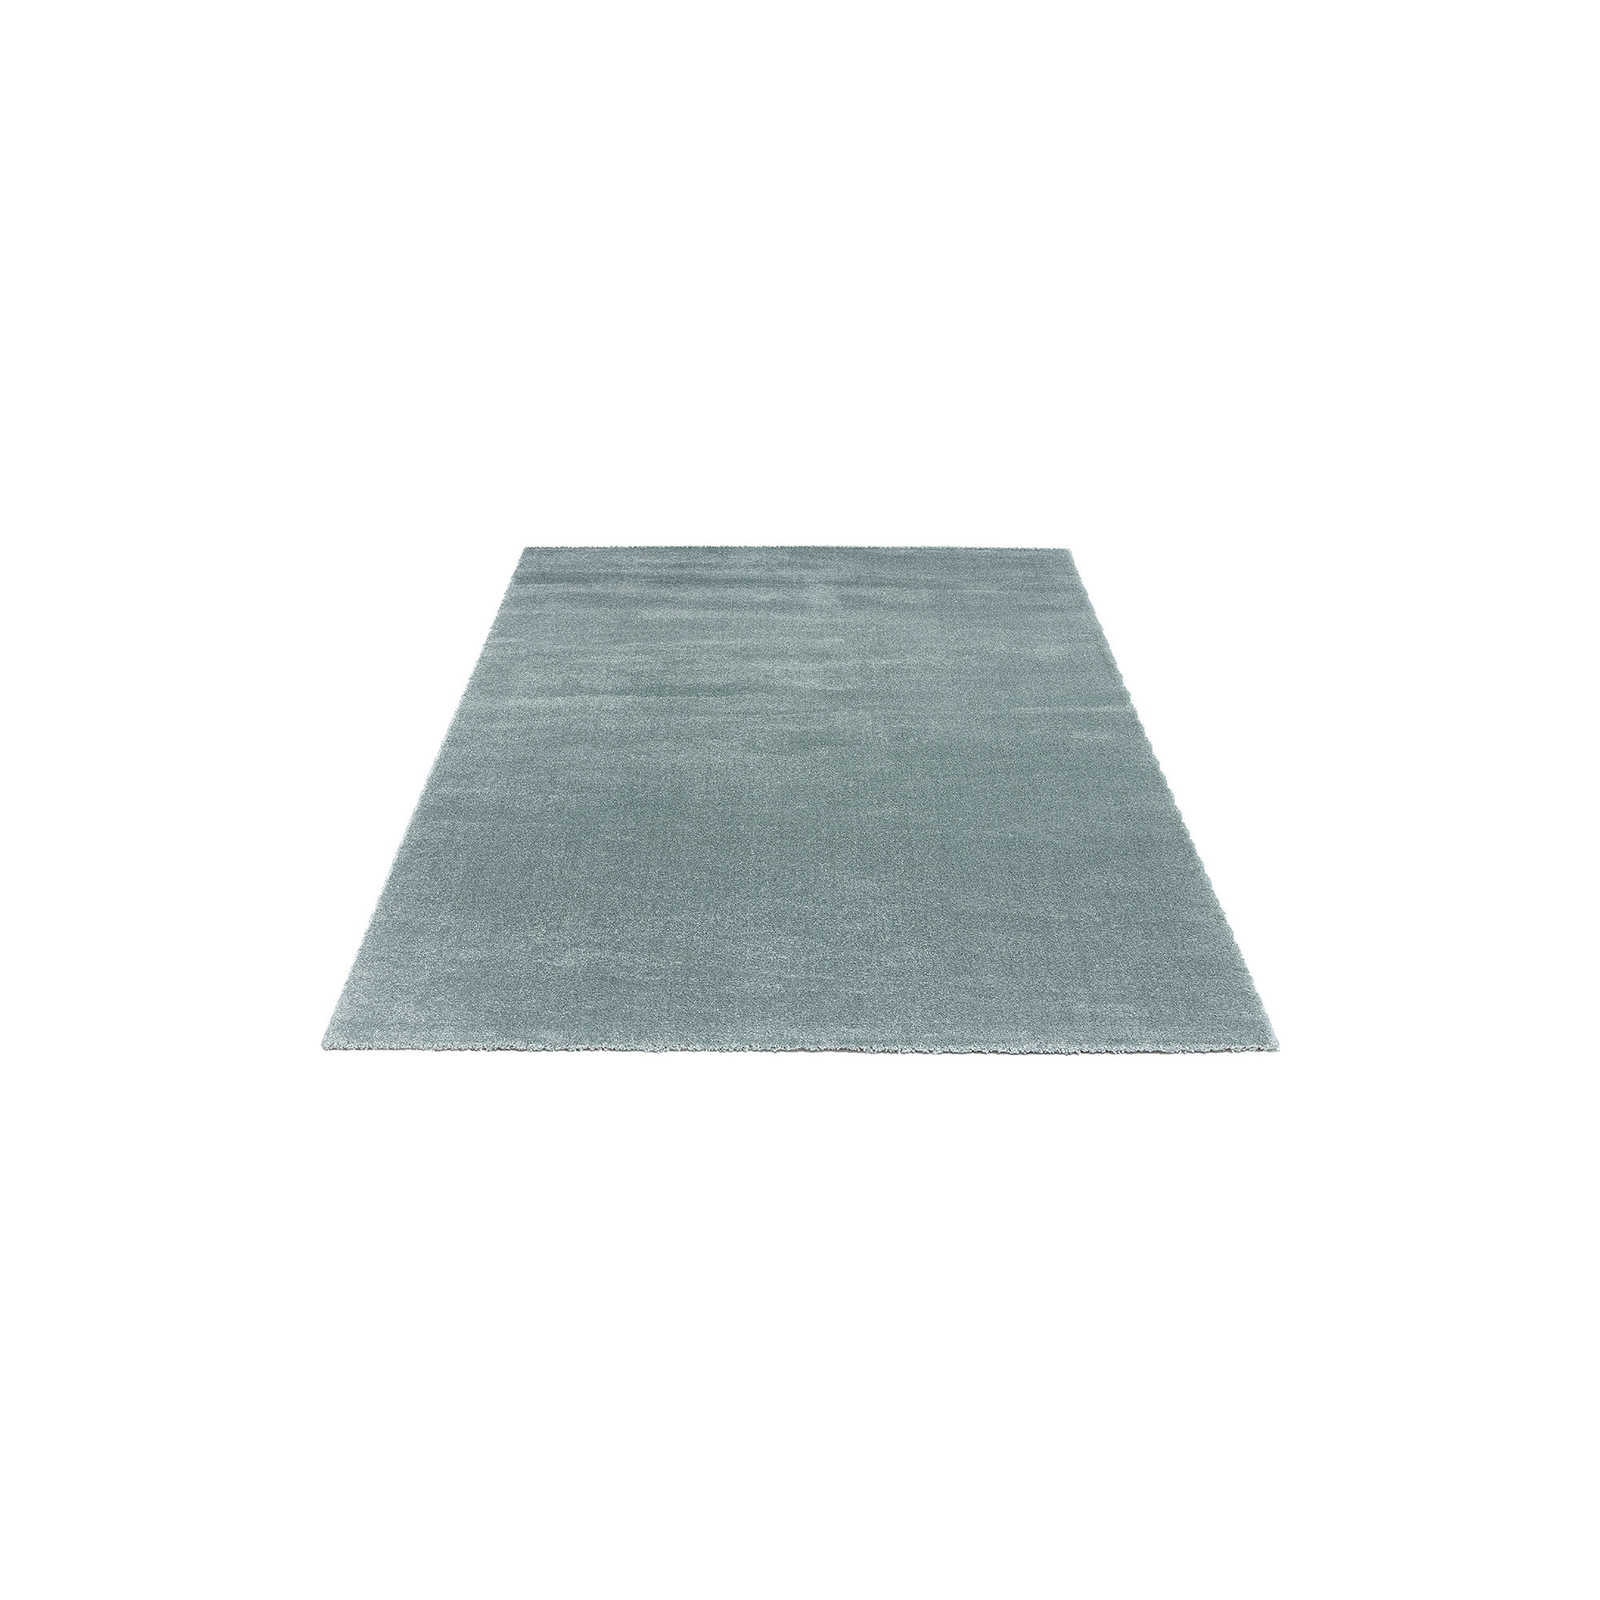 Eenvoudig kortpolig tapijt in blauw - 170 x 120 cm
